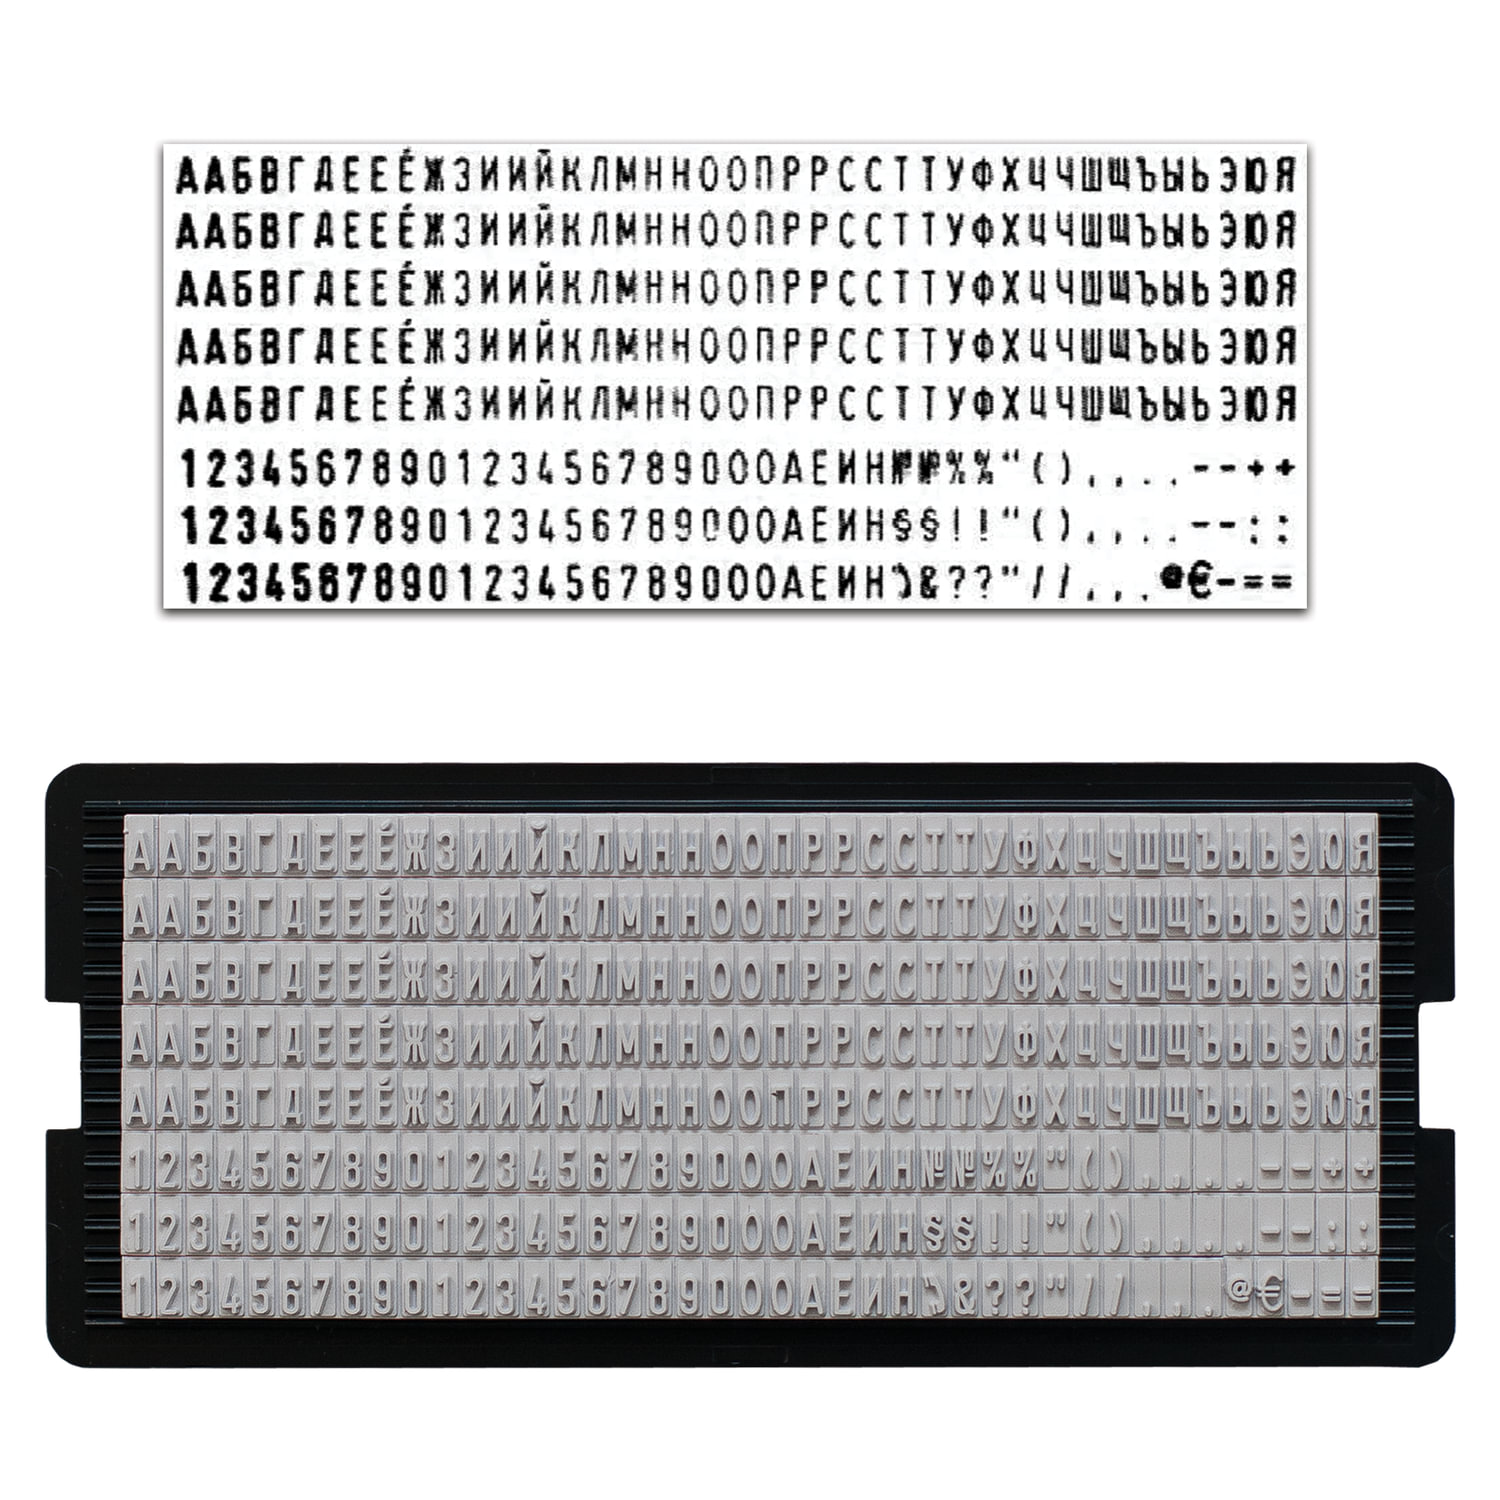 Касса русских букв и цифр, для самонаборных печатей и штампов TRODAT, 328 символов, шрифт 3 мм, 6431